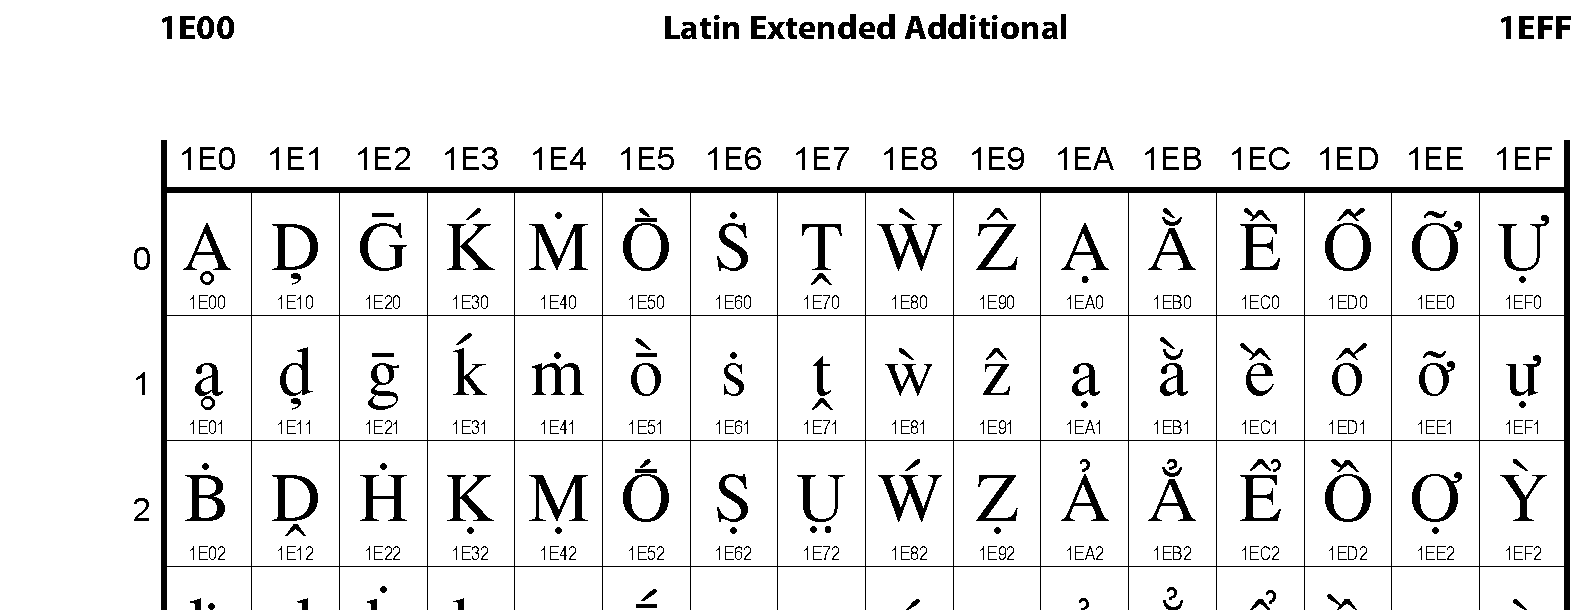 Unicode - Latin Extended Additional